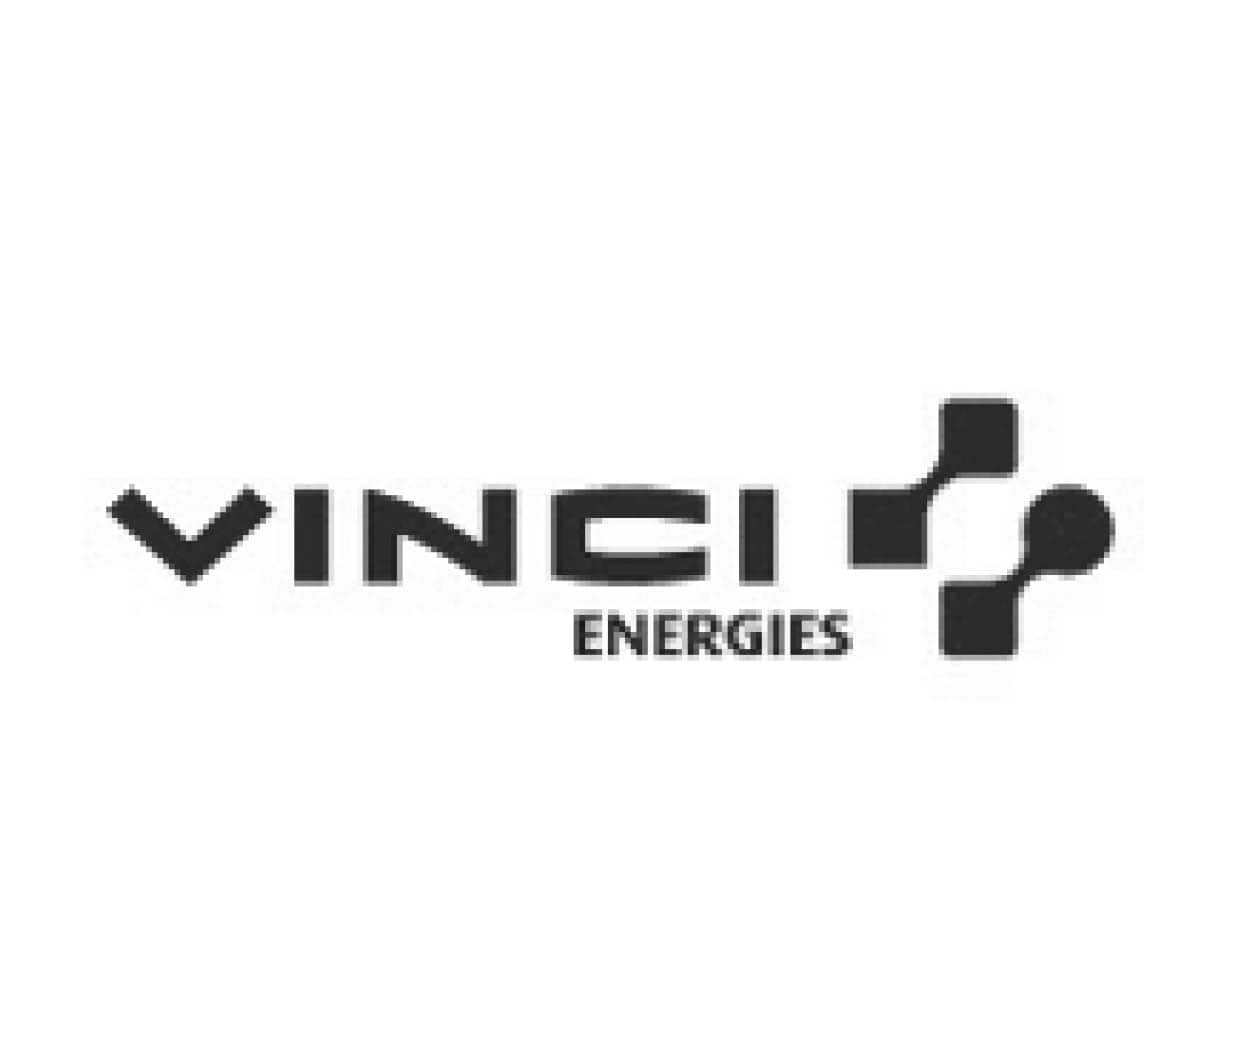 Vinci Energies